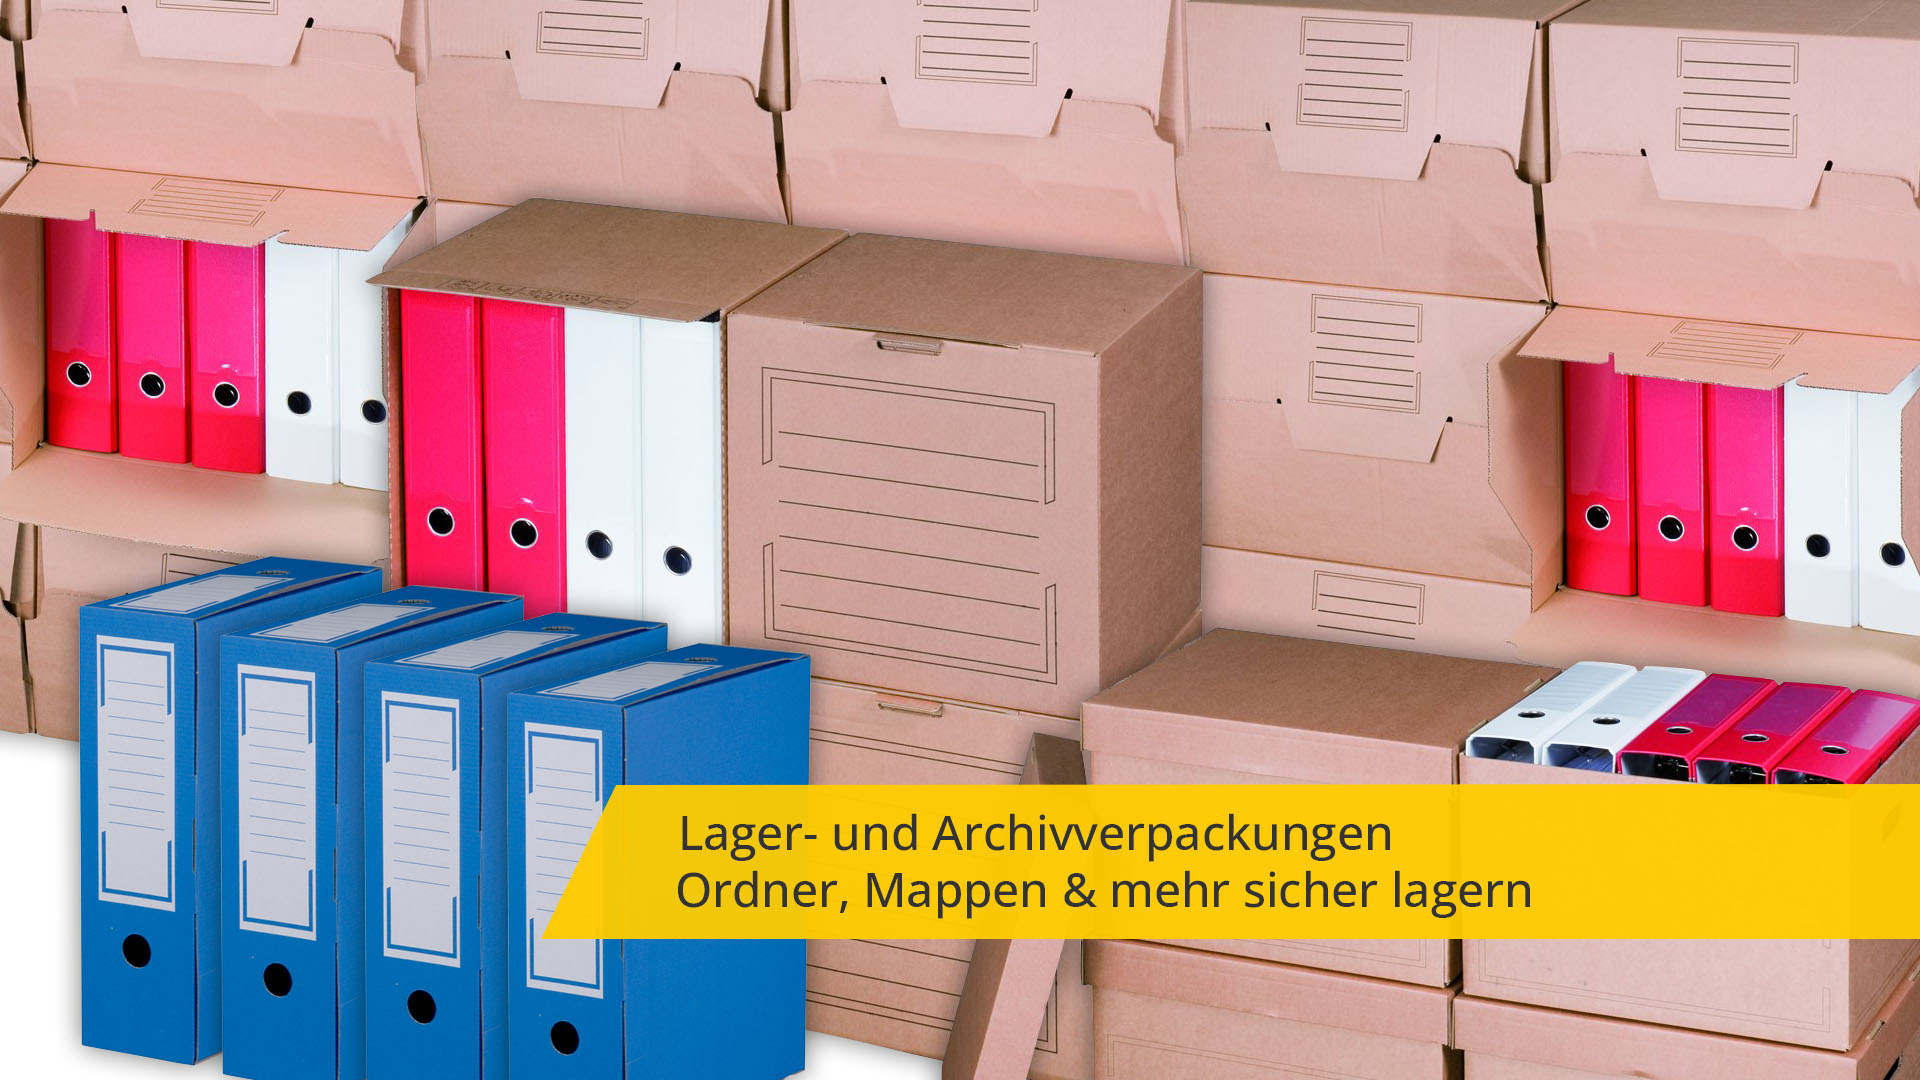 Lager- und Archivverpackungen für die langfristige Aufbewahrung von Ordnern, Akten und sonstigem Schriftgut.